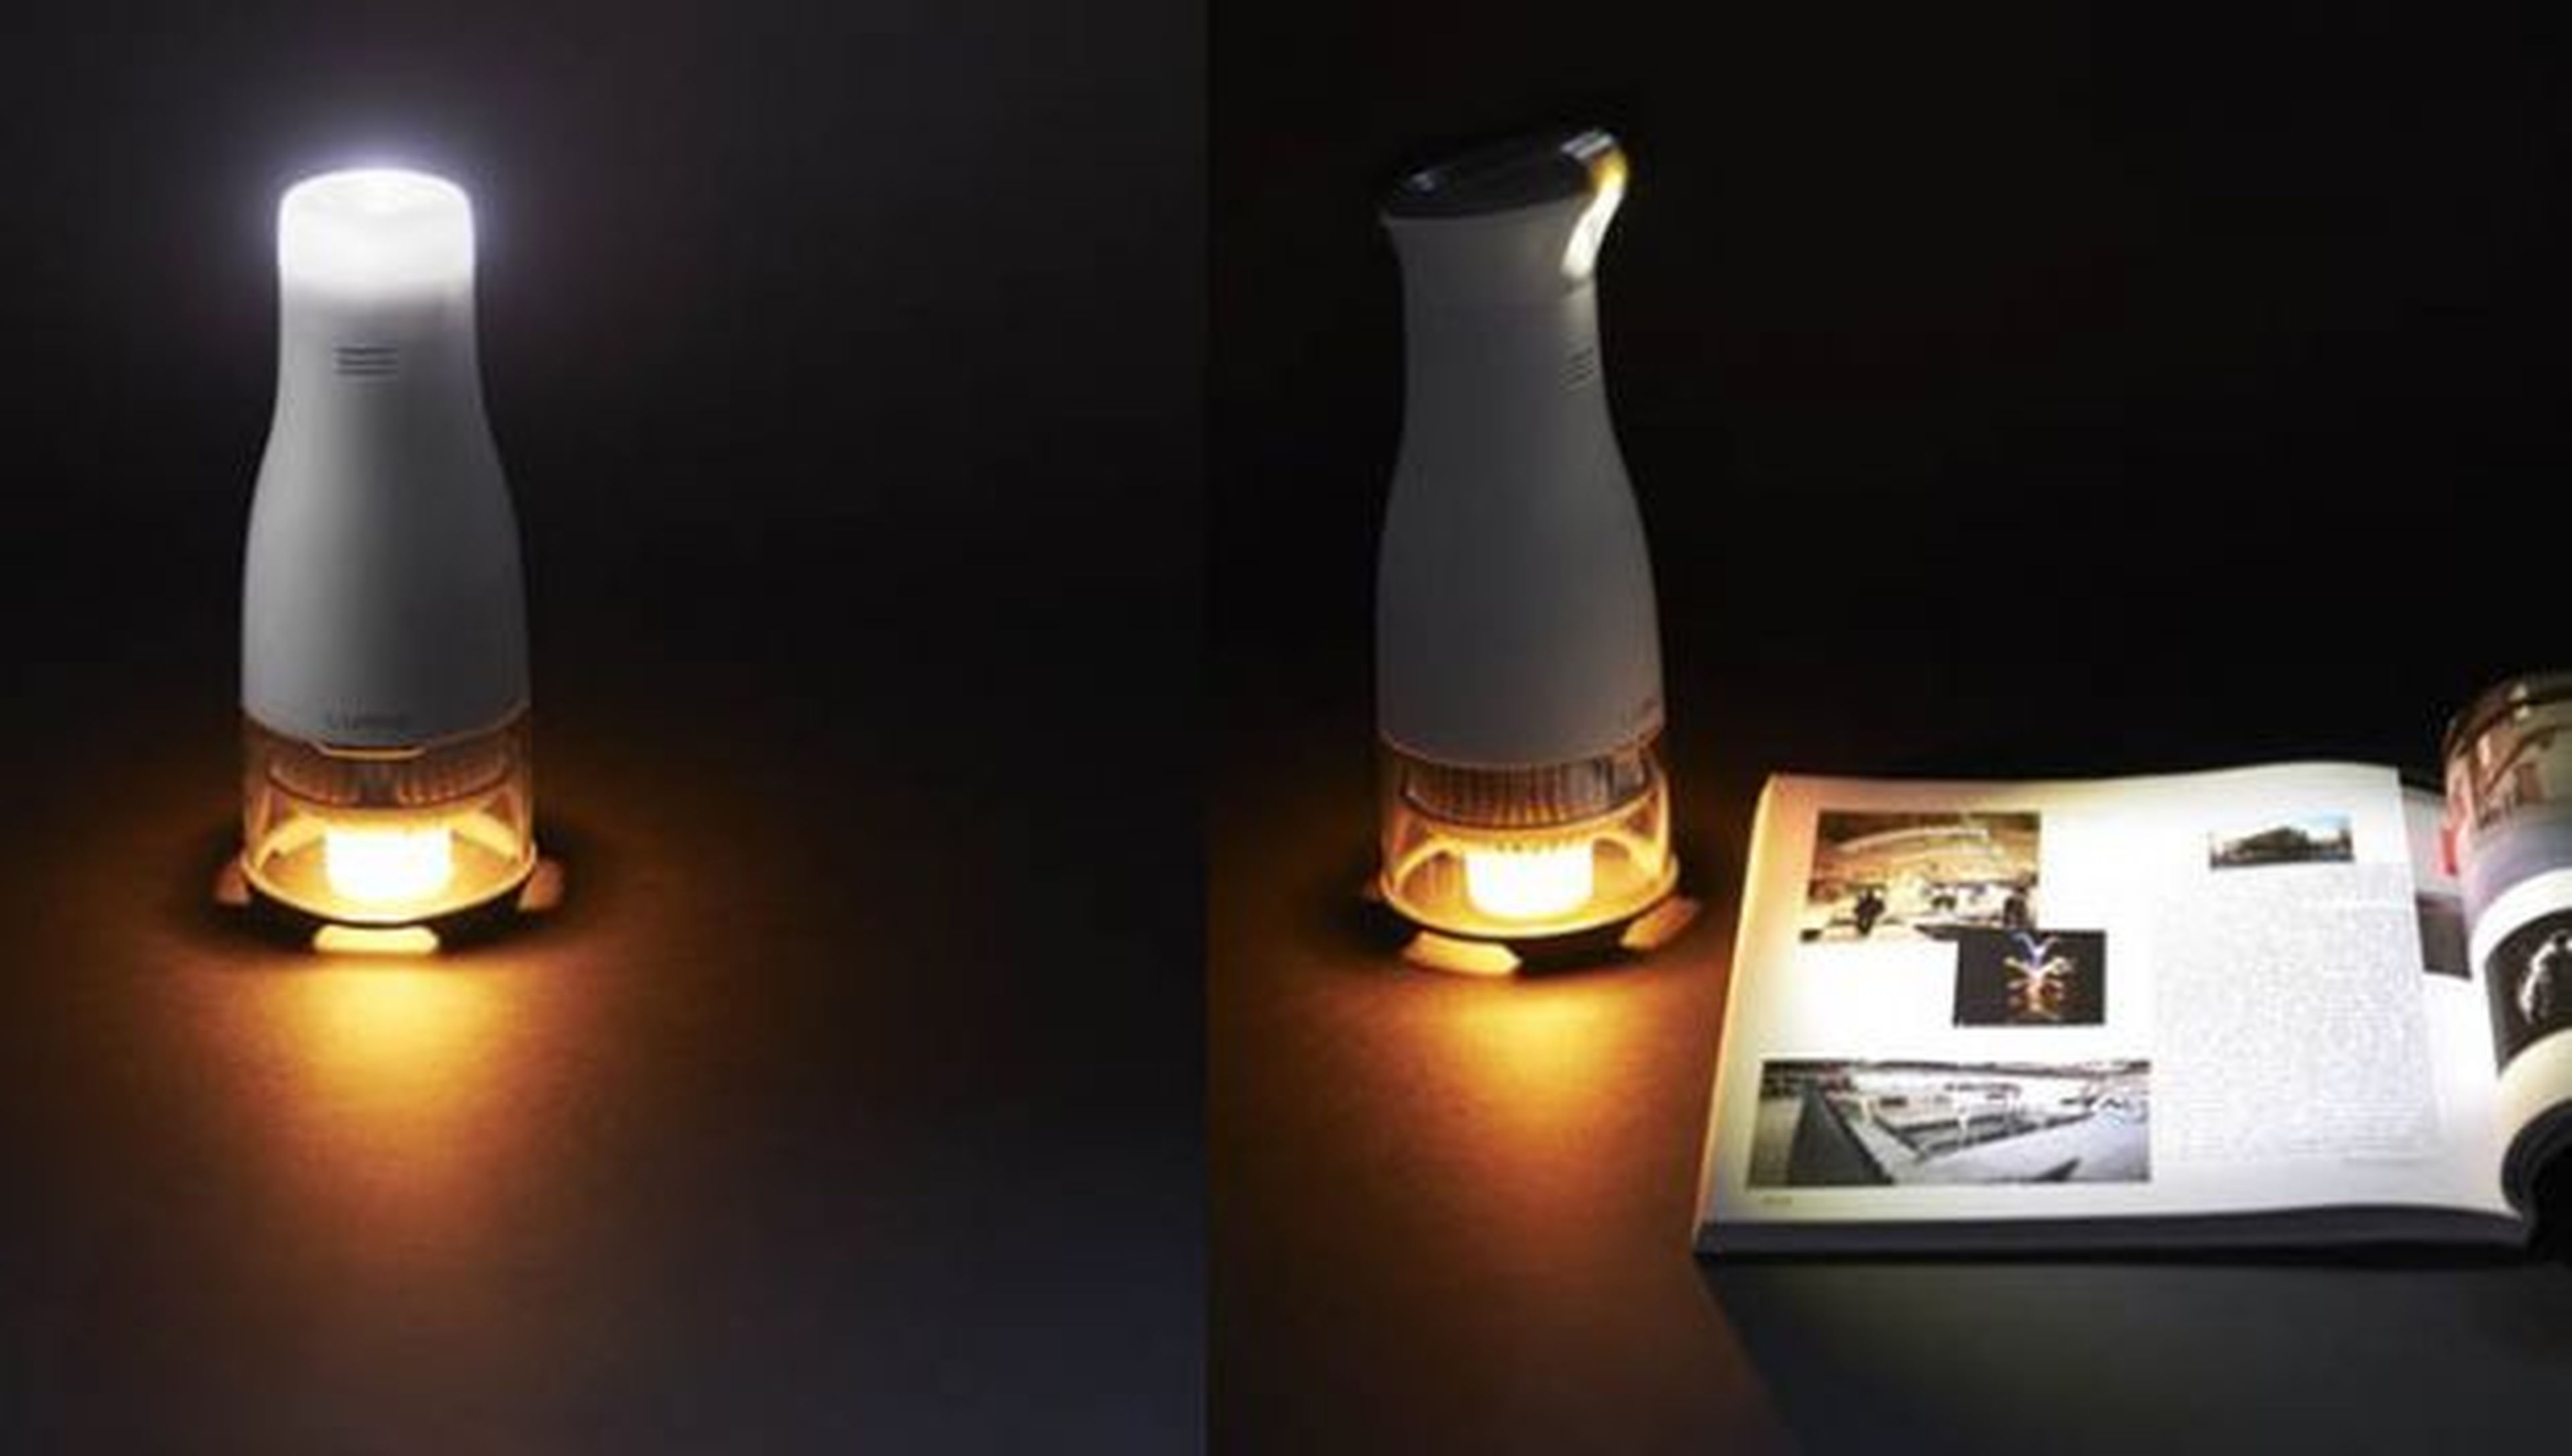 Modelos de Lumir C, la lámpara LED que funciona gracias a una vela